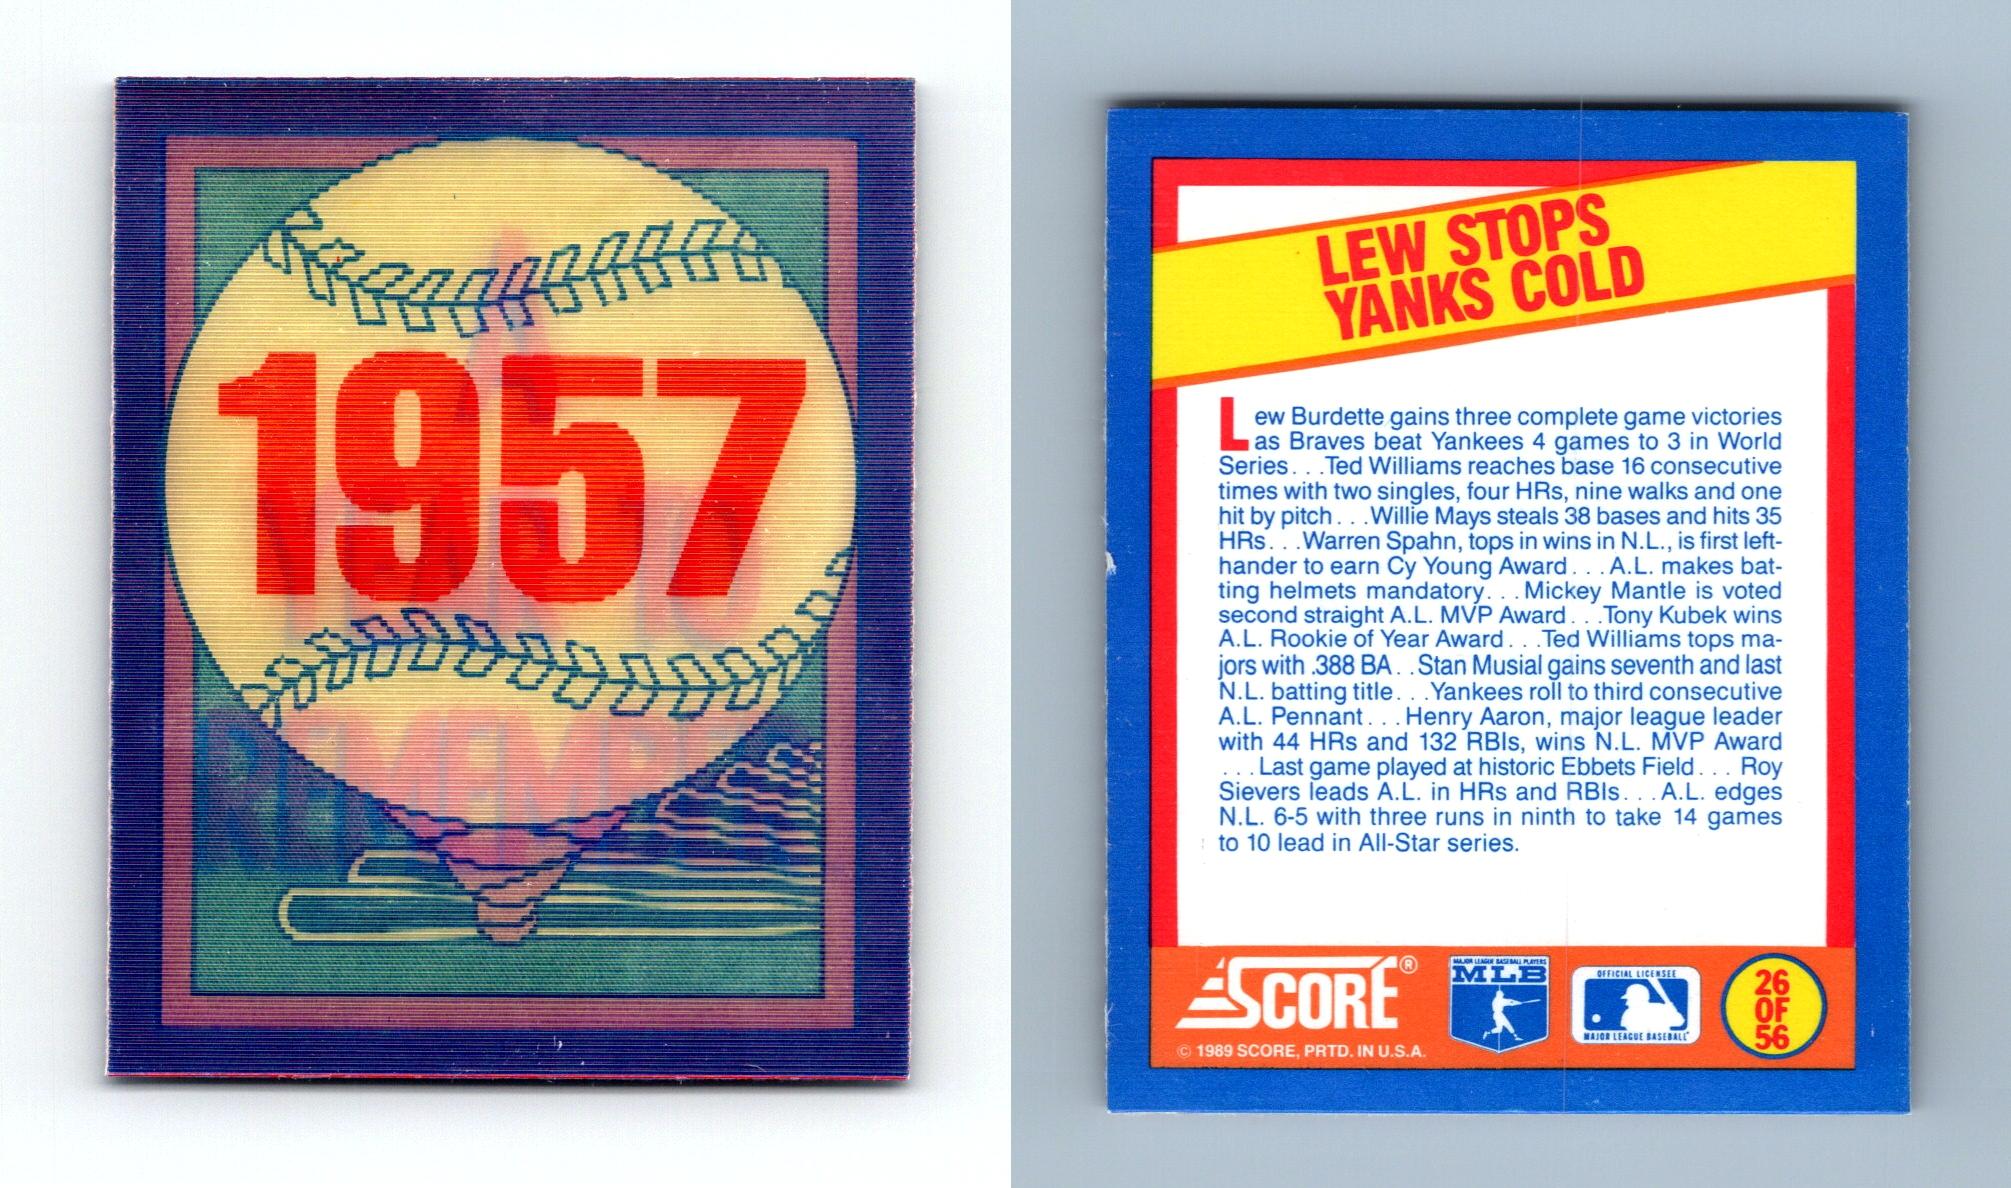 Graig Nettles - Expos #277 Score 1989 Baseball Trading Card